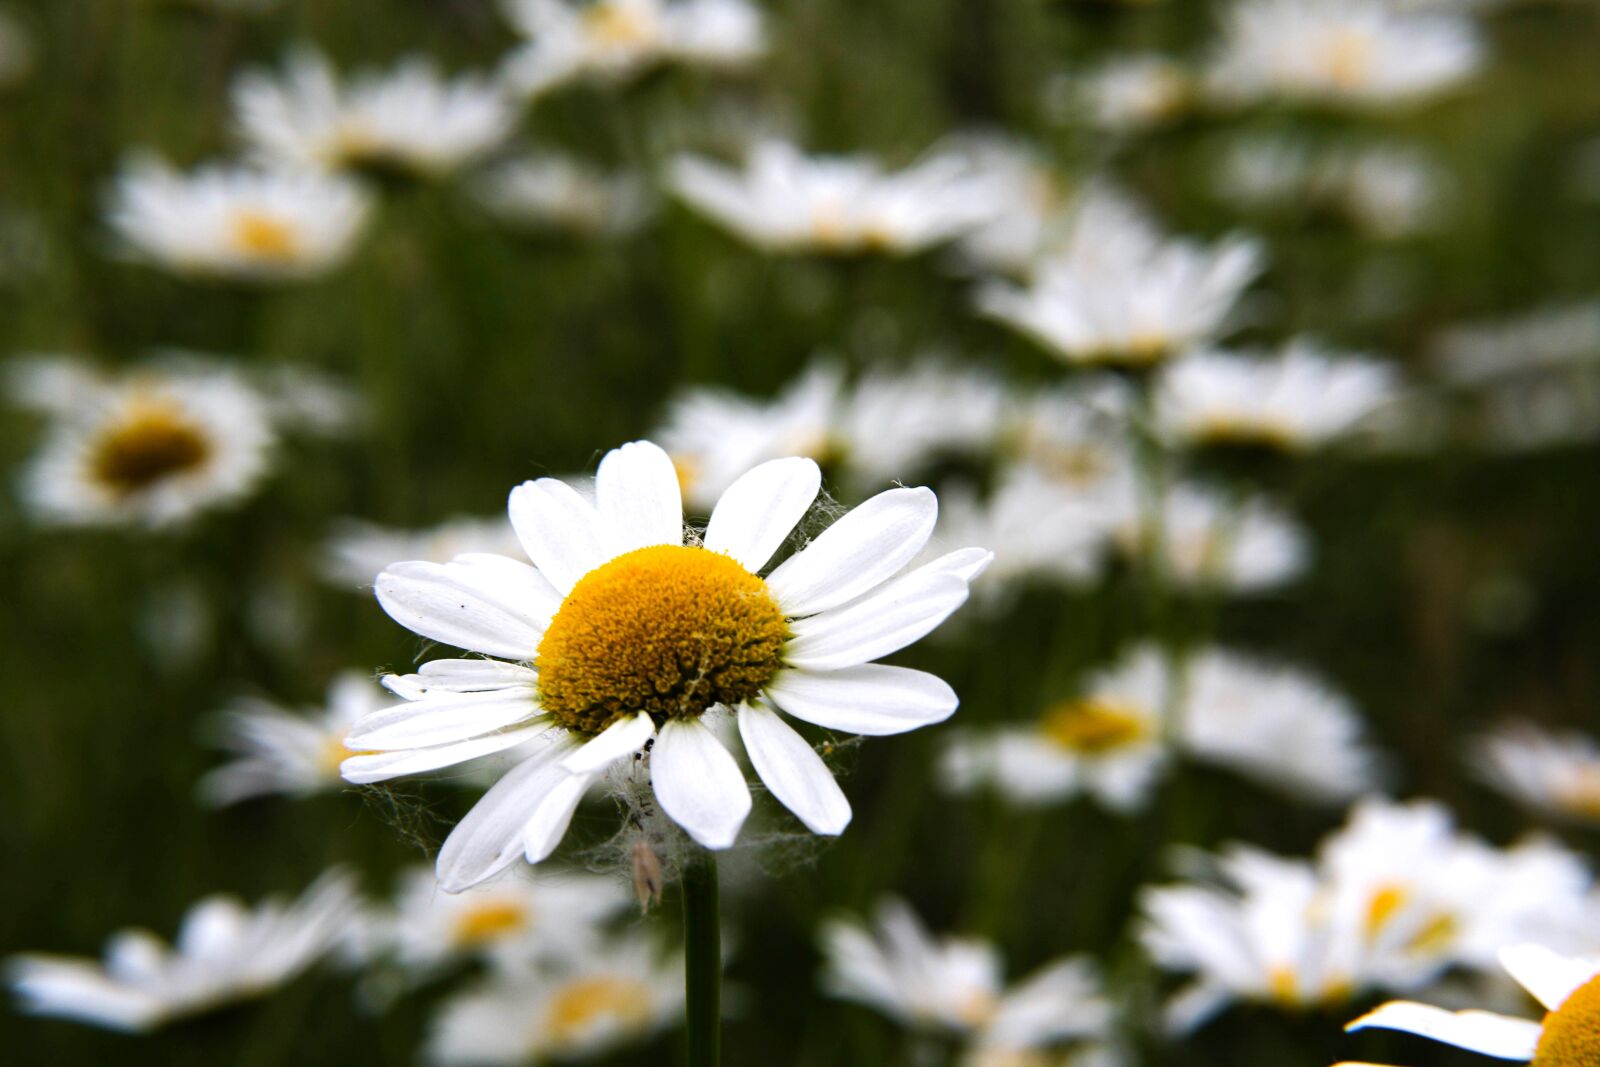 Canon EOS 7D Mark II sample photo. Flowers, daisy, ox-eye daisy photography